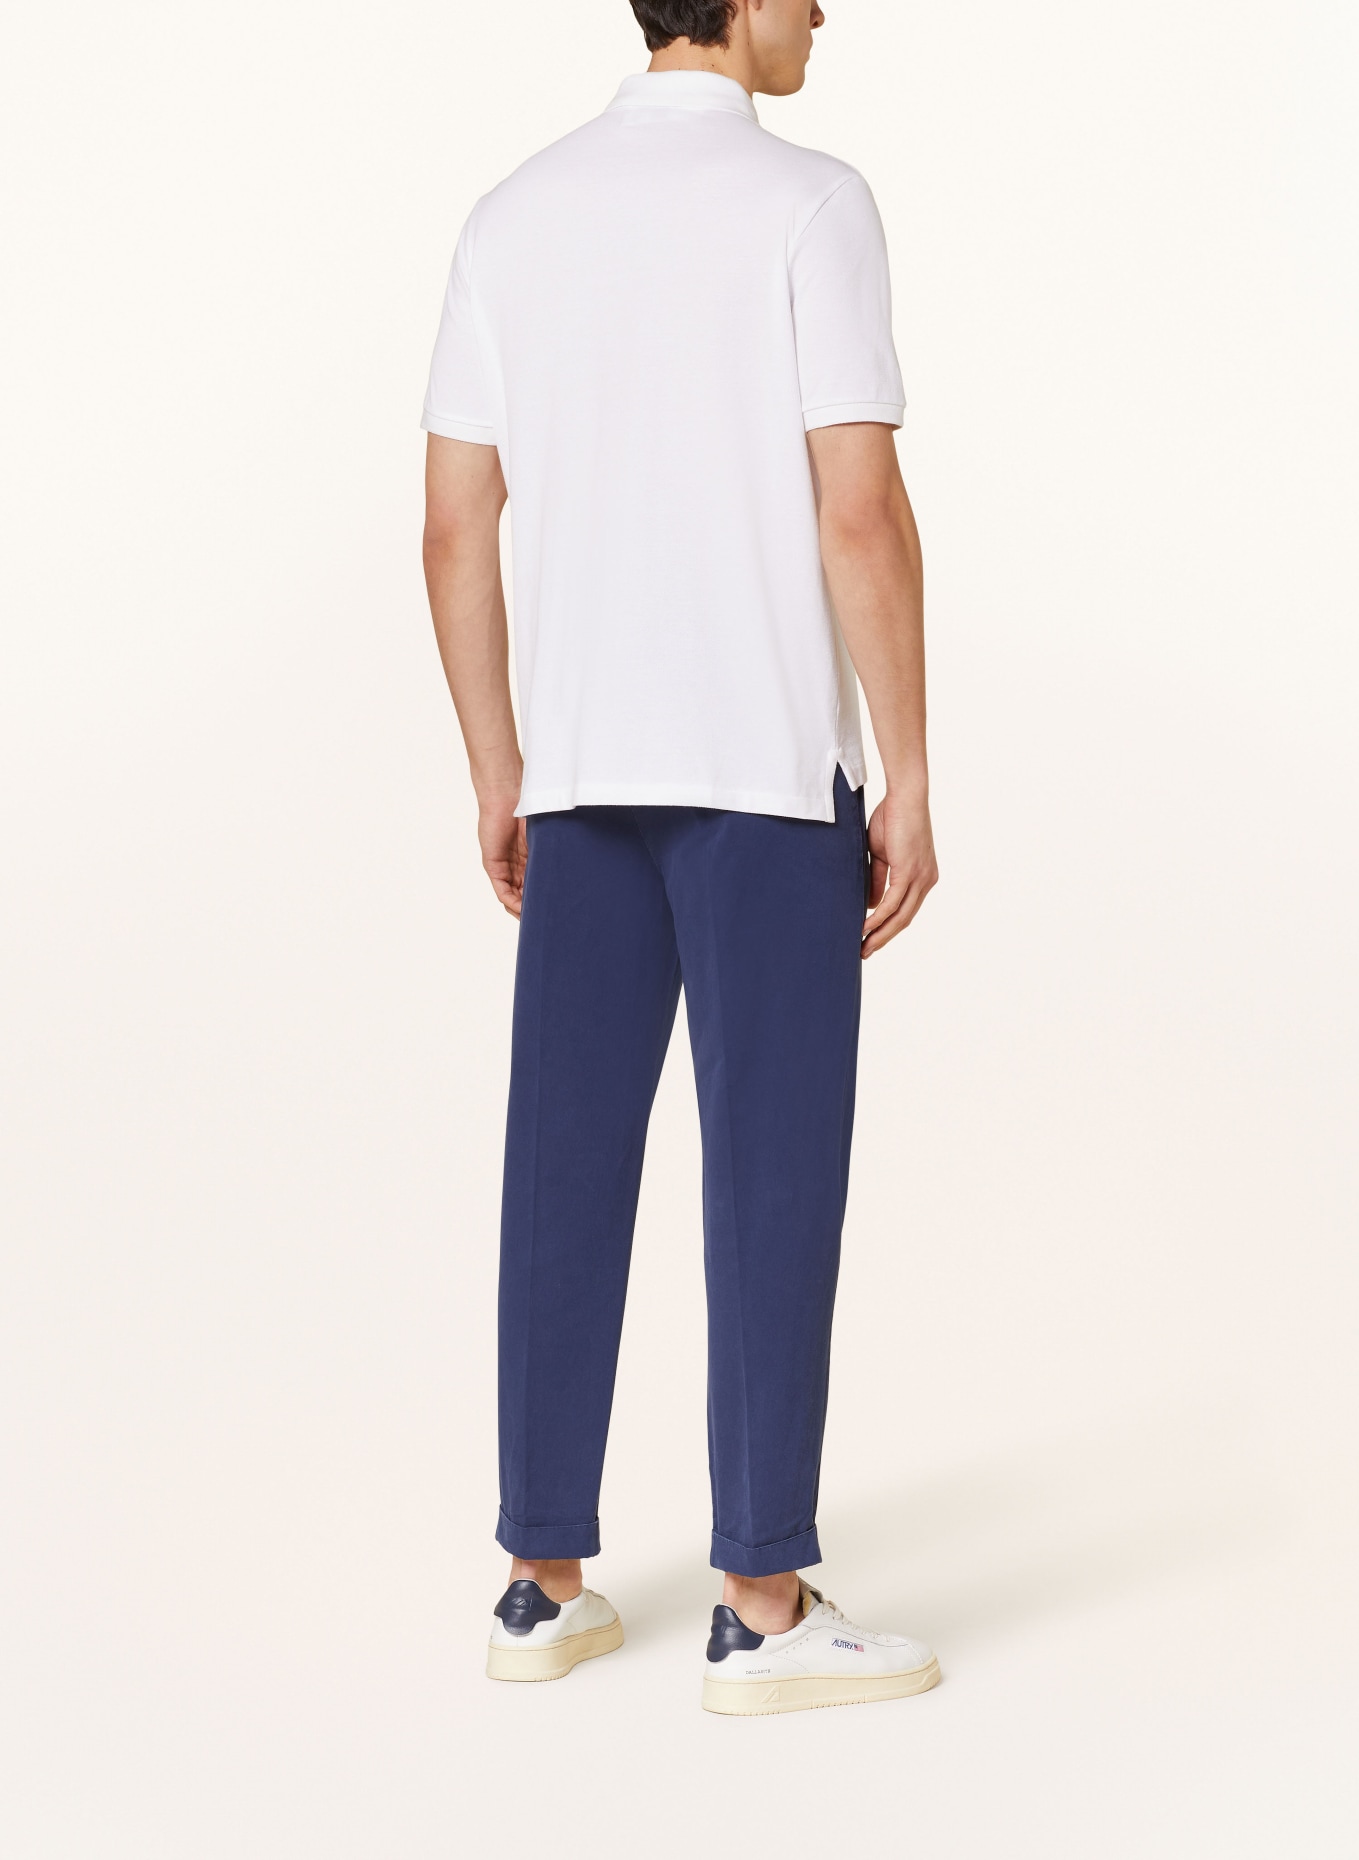 POLO RALPH LAUREN Piqué polo shirt classic fit, Color: WHITE/ DARK BLUE (Image 3)